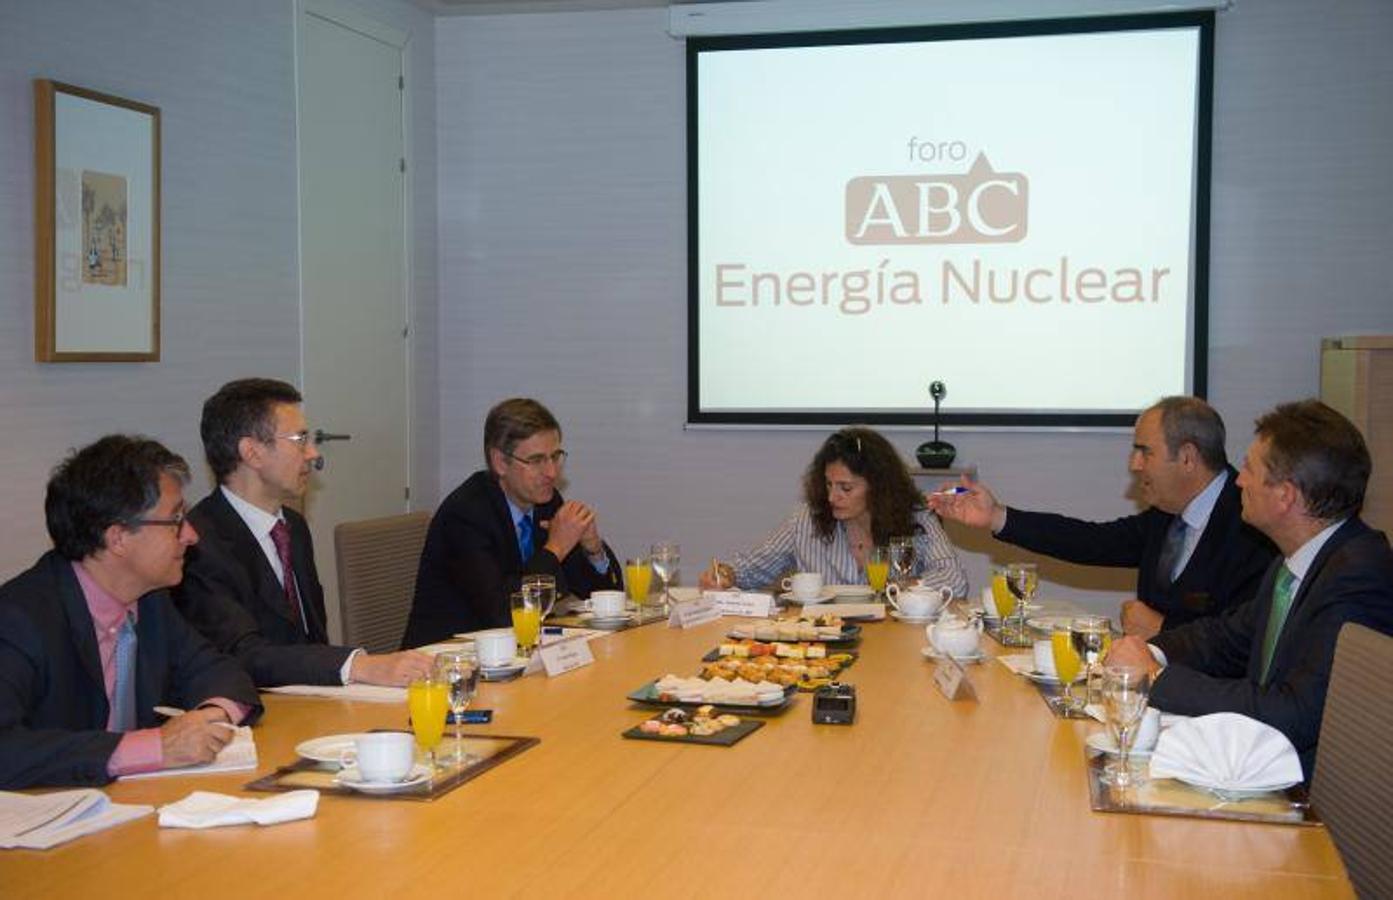 De iquierda a derecha, Arturo Rojas, de Afi (en segundo lugar); José Emeterio Gutiérrez, de Westinghouse Electric; Yolanda Gómez, subdirectora de ABC; Ignacio Araluce, del Foro Nuclear y Fernando Soto, de AEGE. 